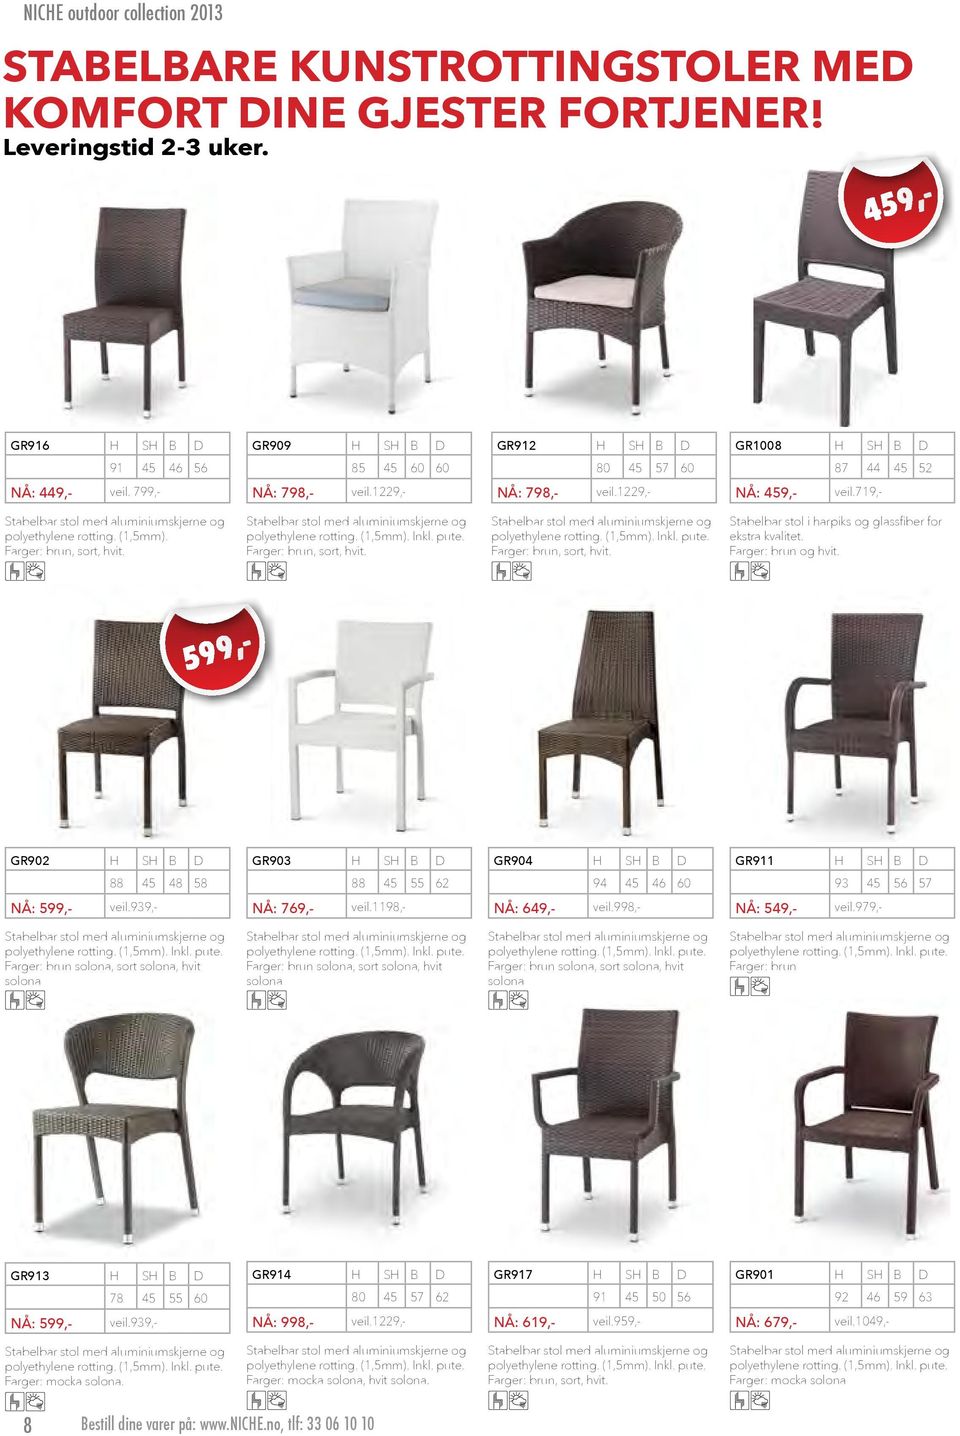 1229,- NÅ: 798,- Stabelbar stol med aluminiumskjerne og polyethylene rotting. (1,5mm). Inkl. pute. Farger: brun, sort, hvit. S B 80 45 GR1008 57 60 veil.